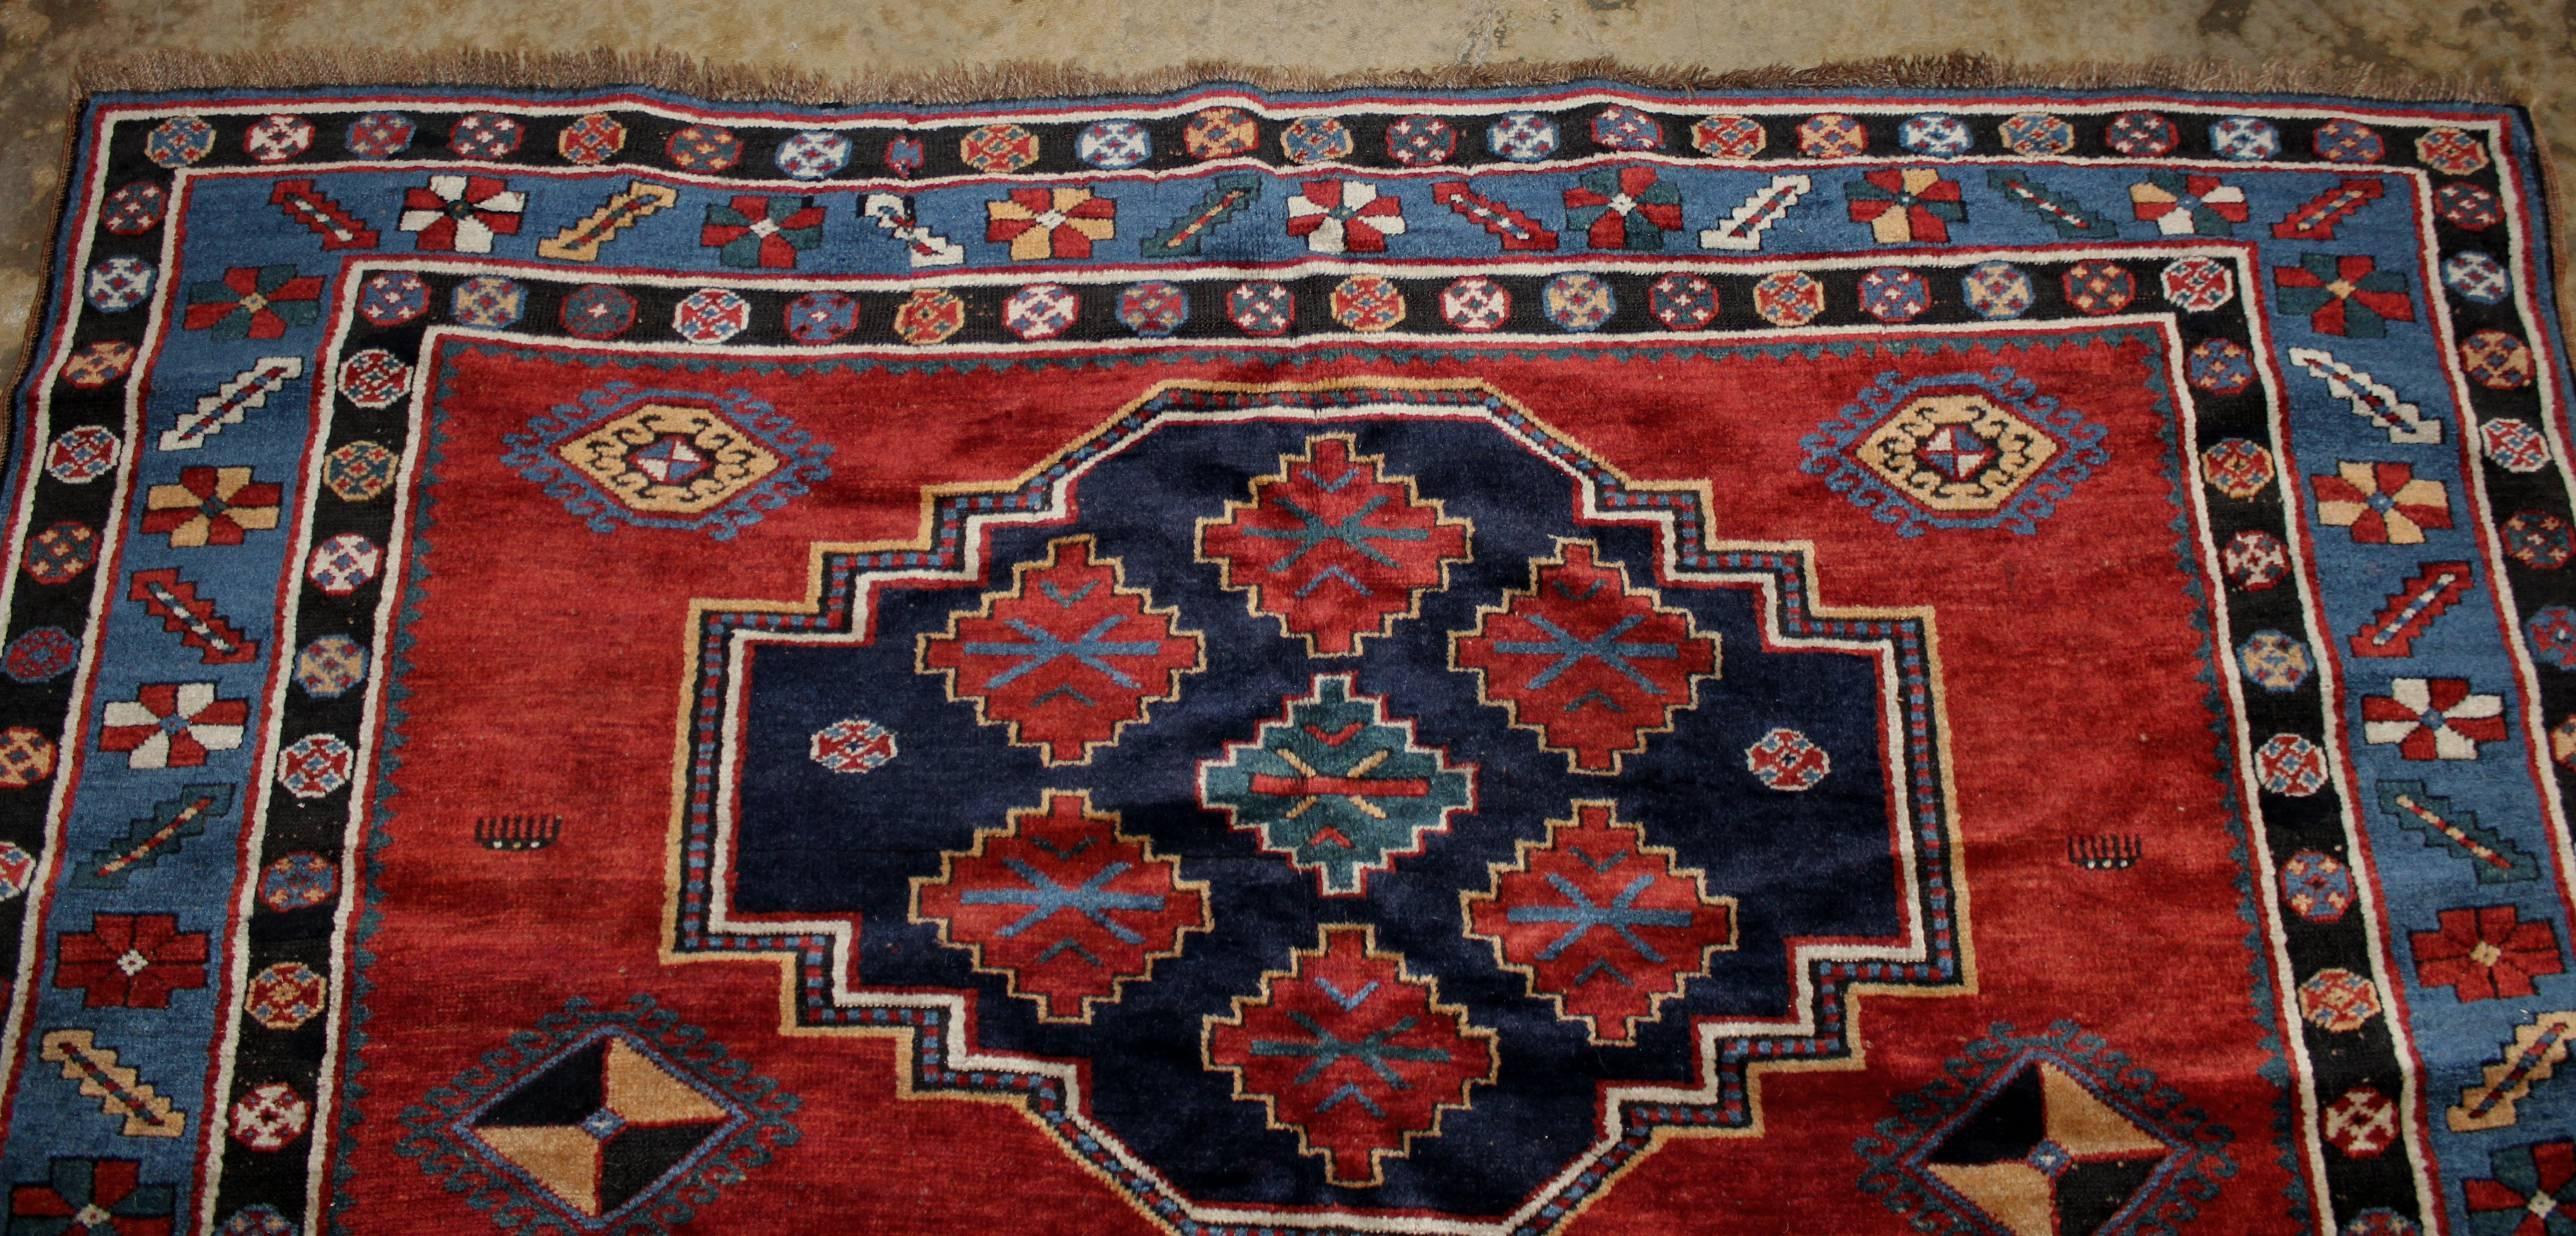 Kazak Scatter Rug or Carpet circa 1900 1